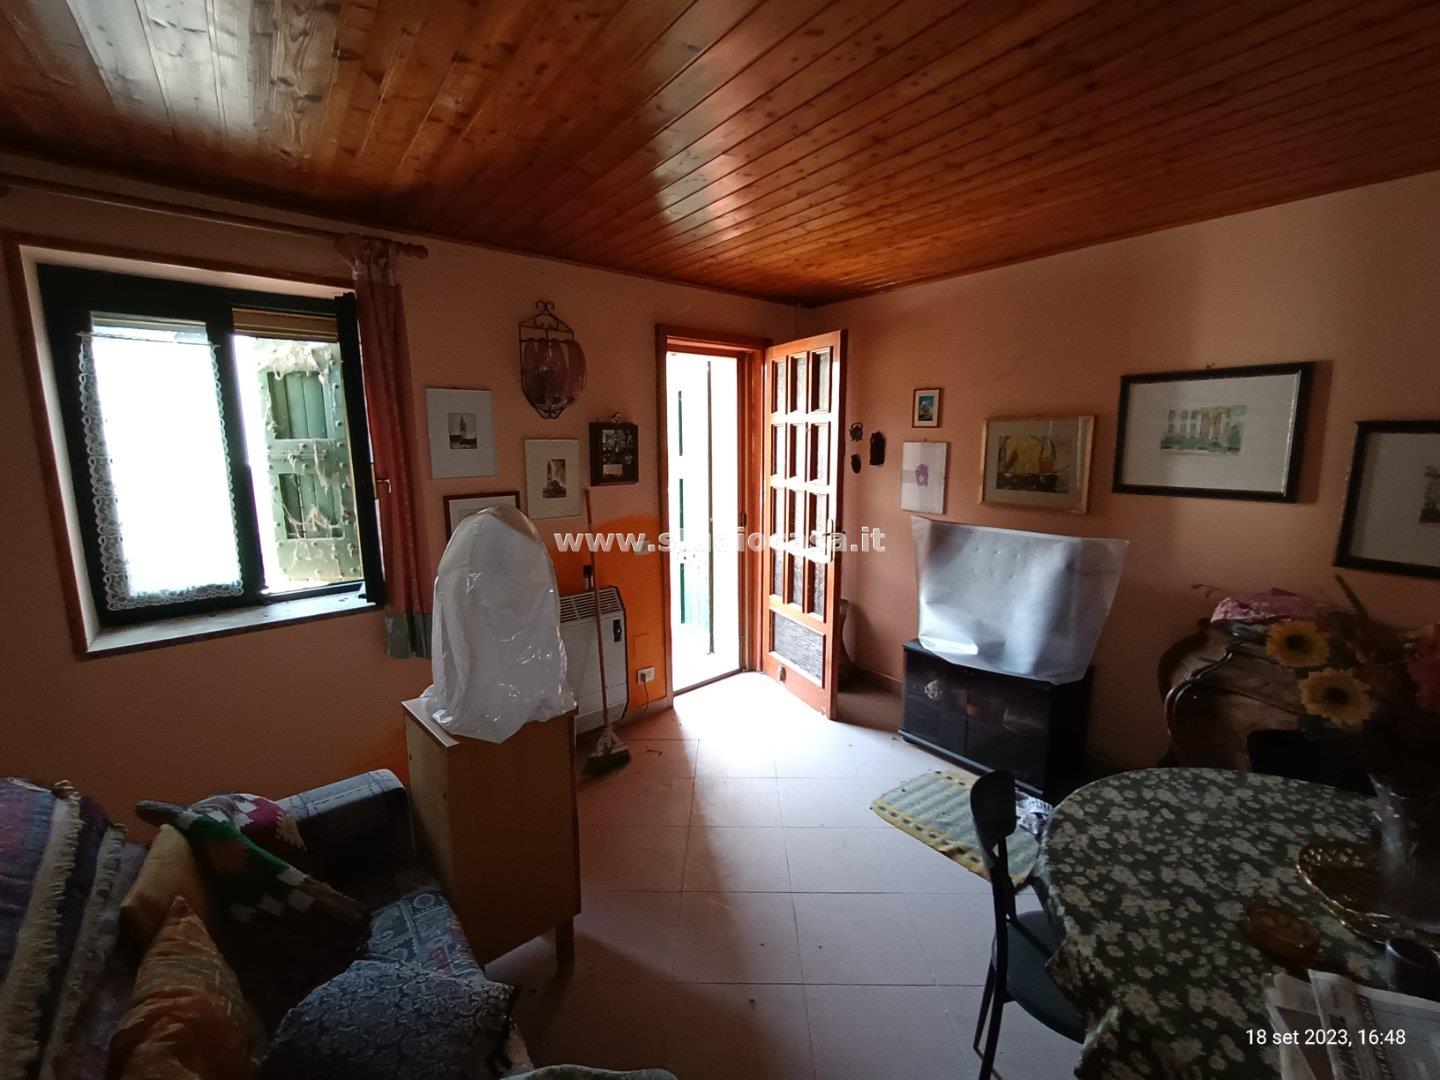 Casa Unifamiliare in vendita a Formigara